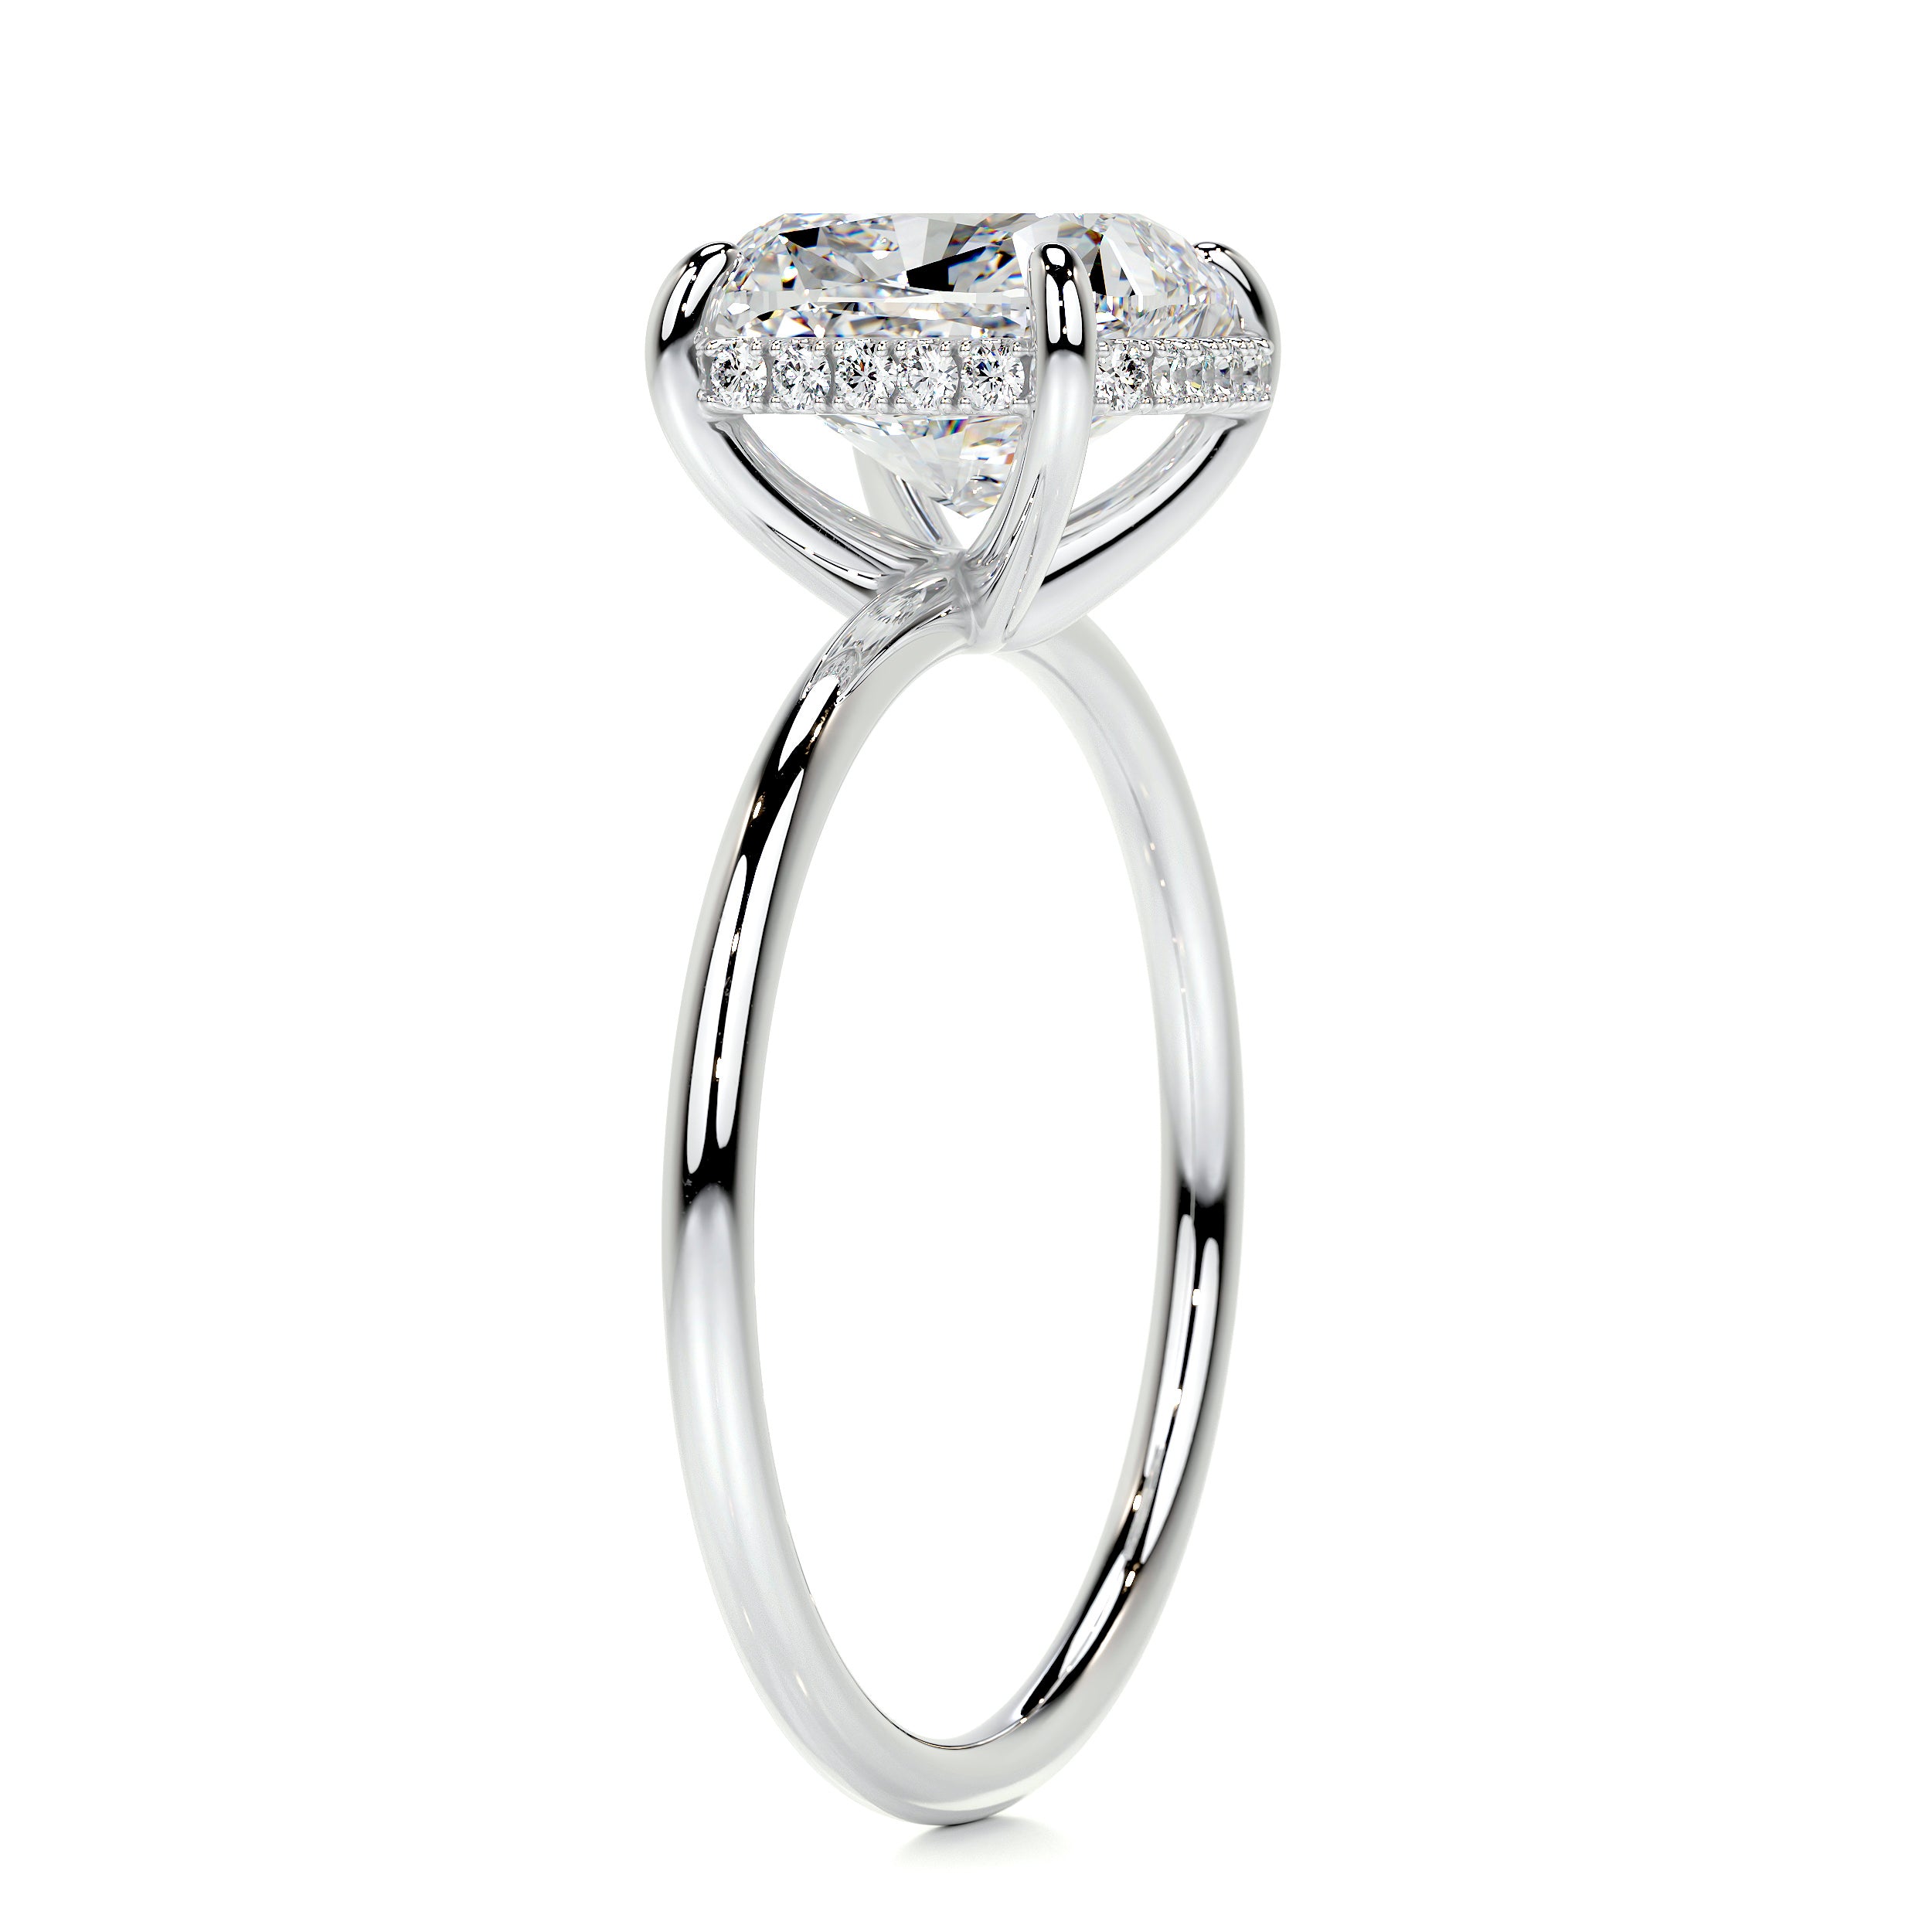 Priscilla Diamond Engagement Ring -Platinum